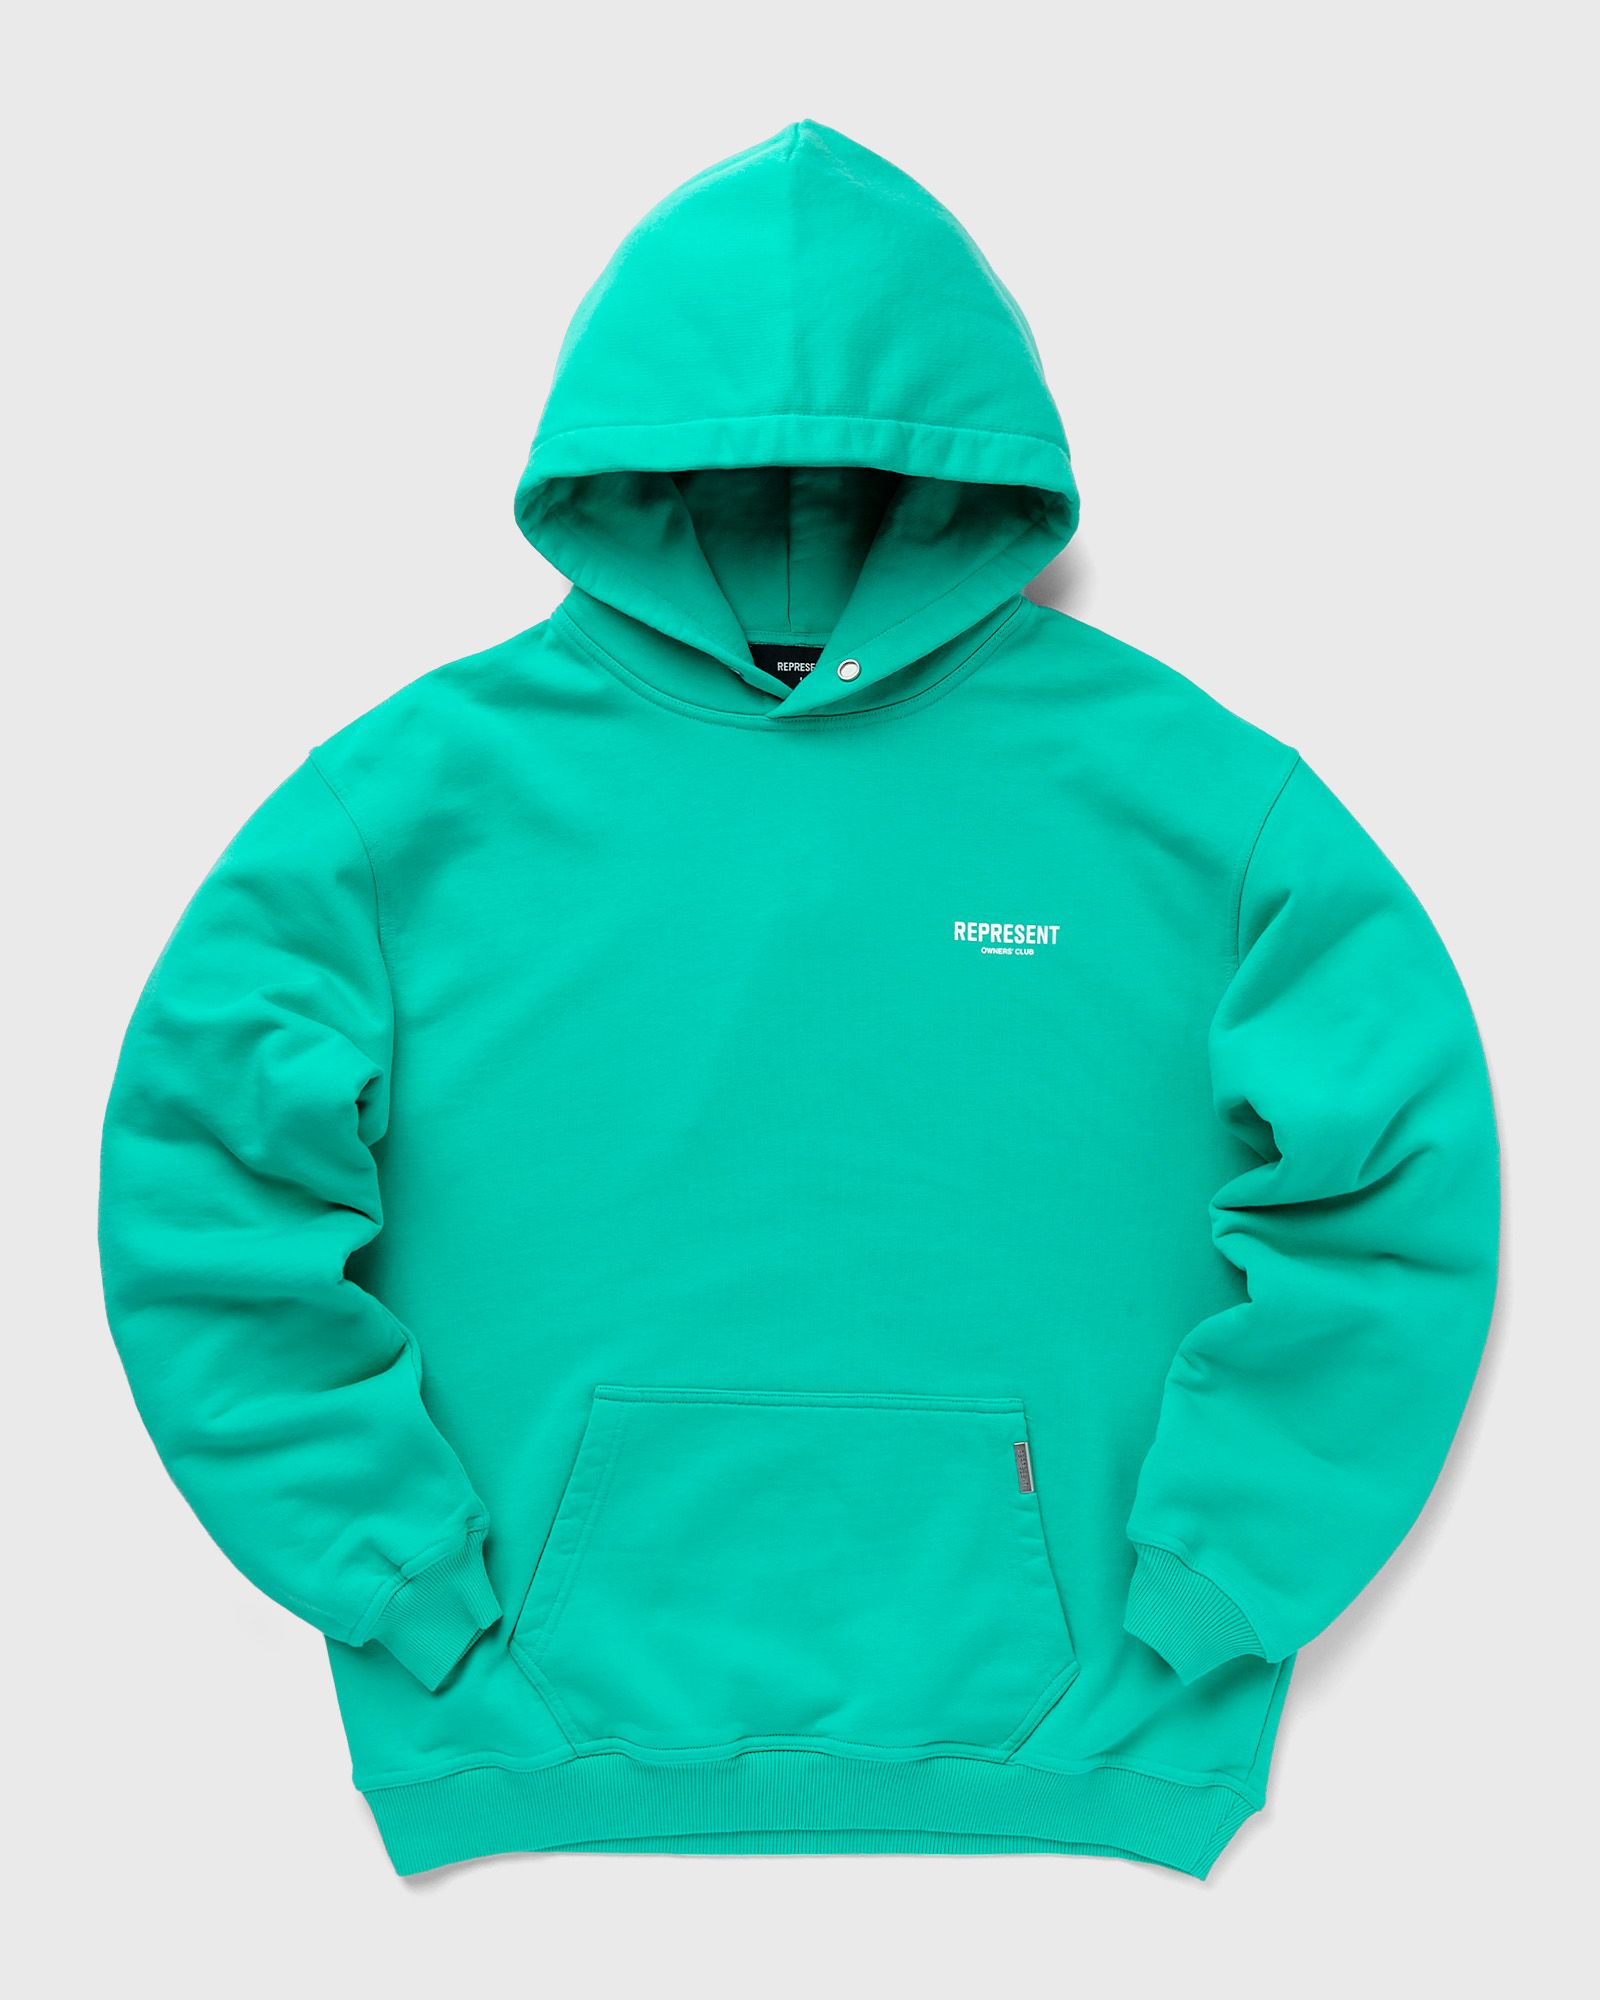 Represent - exclusive bstn x  owners club hoodie men hoodies green in größe:xxl